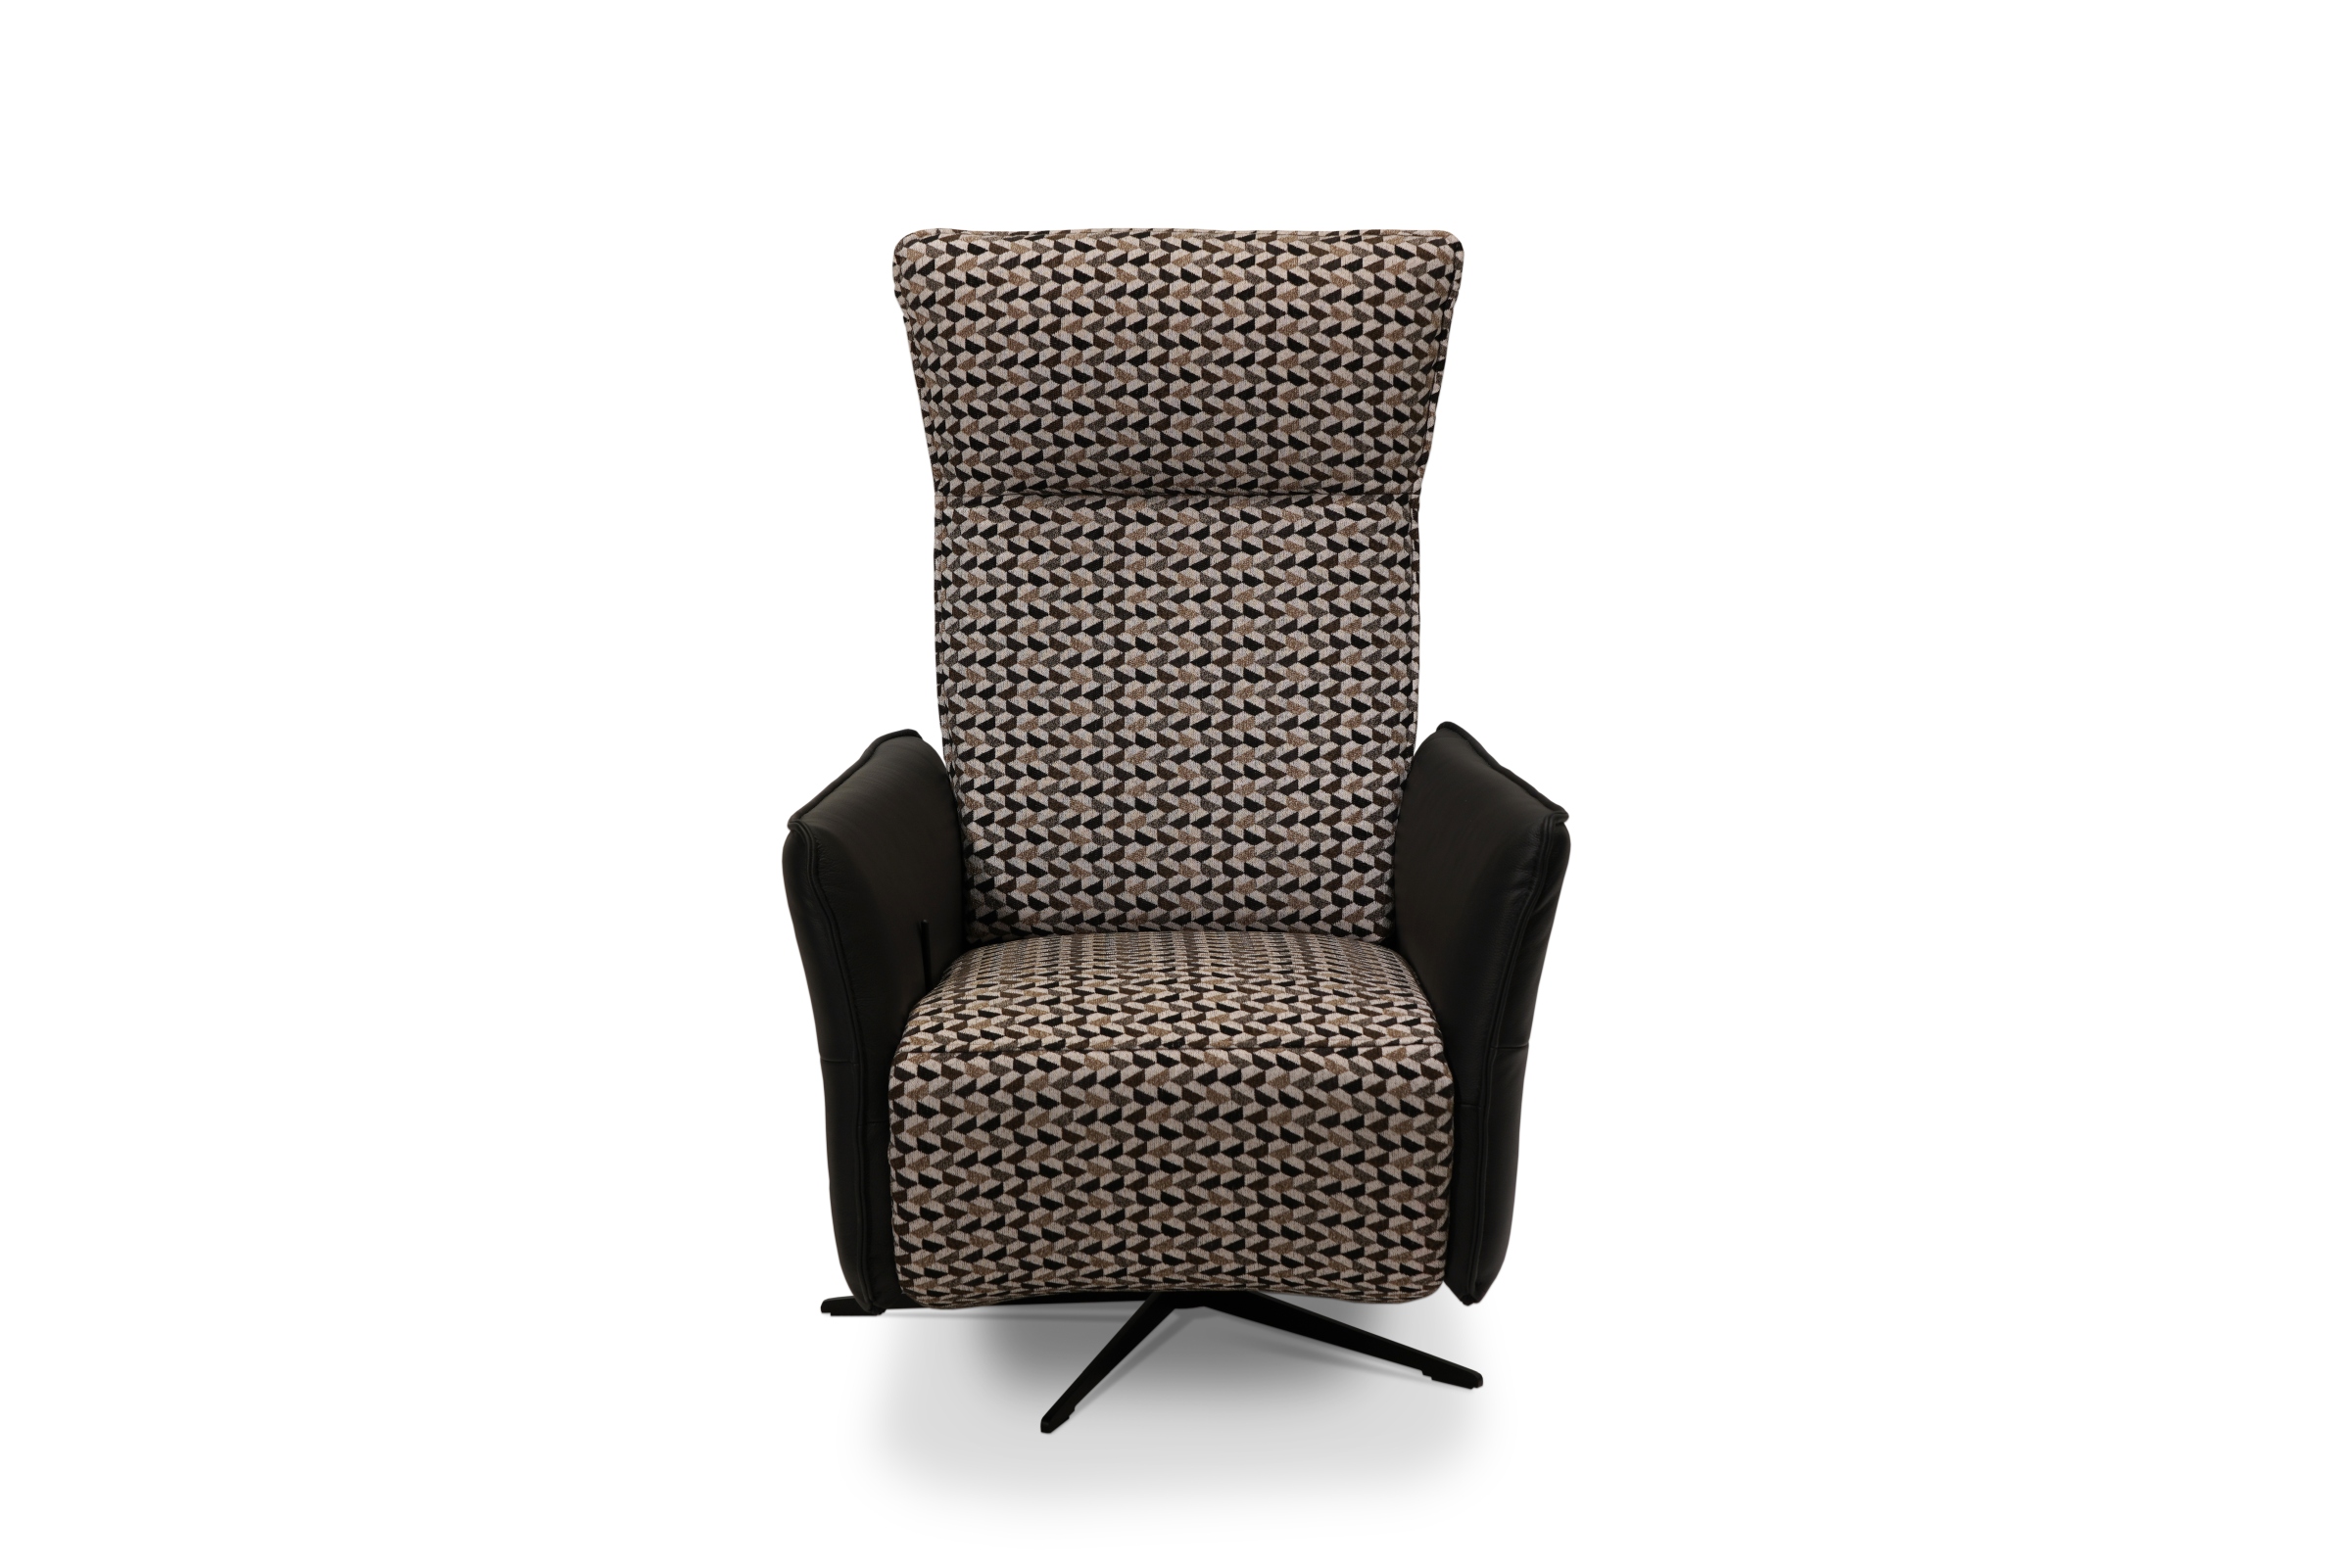 Fotel rozkładany mechanicznie , wykonany jest z tkaniny firmy Fargotex w połączeniu ze skórą naturalną